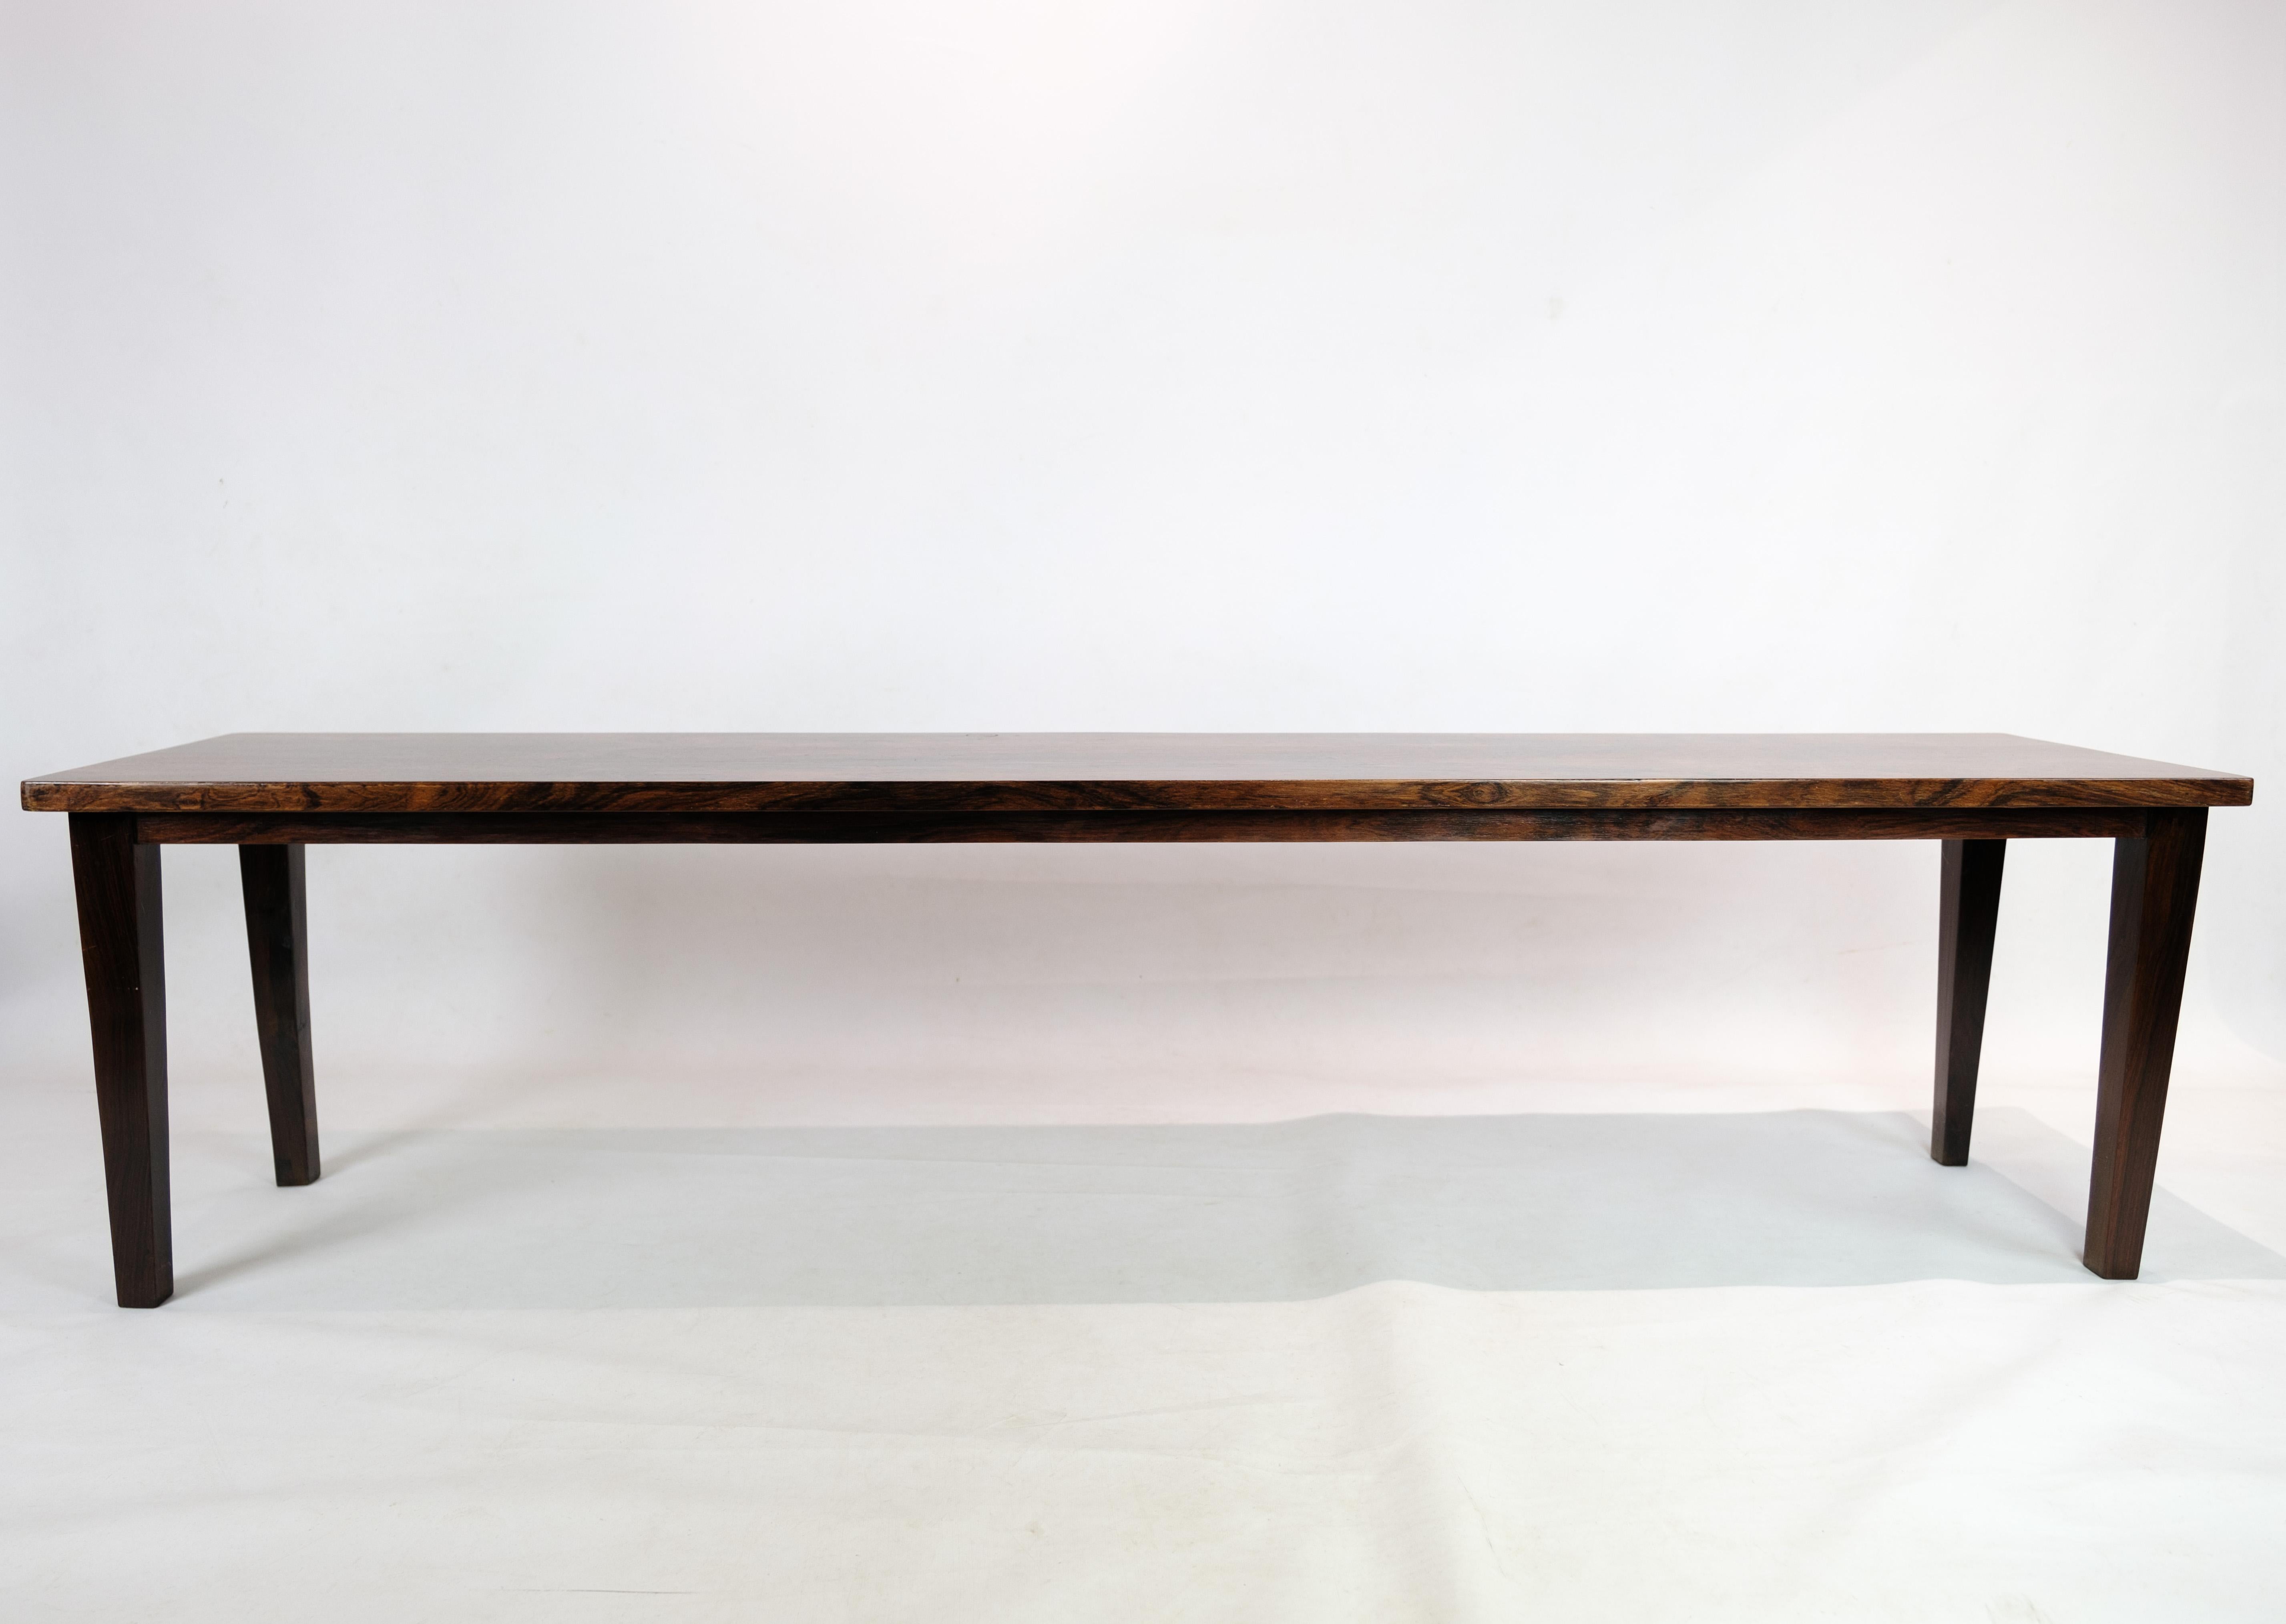 Dieser exquisite Beistelltisch aus Palisanderholz, der in den 1960er Jahren hergestellt wurde, verkörpert die Eleganz und Raffinesse des dänischen Designs. Mit seinen schlanken Linien und der reichen Maserung des Rosenholzes verleiht er jedem Raum